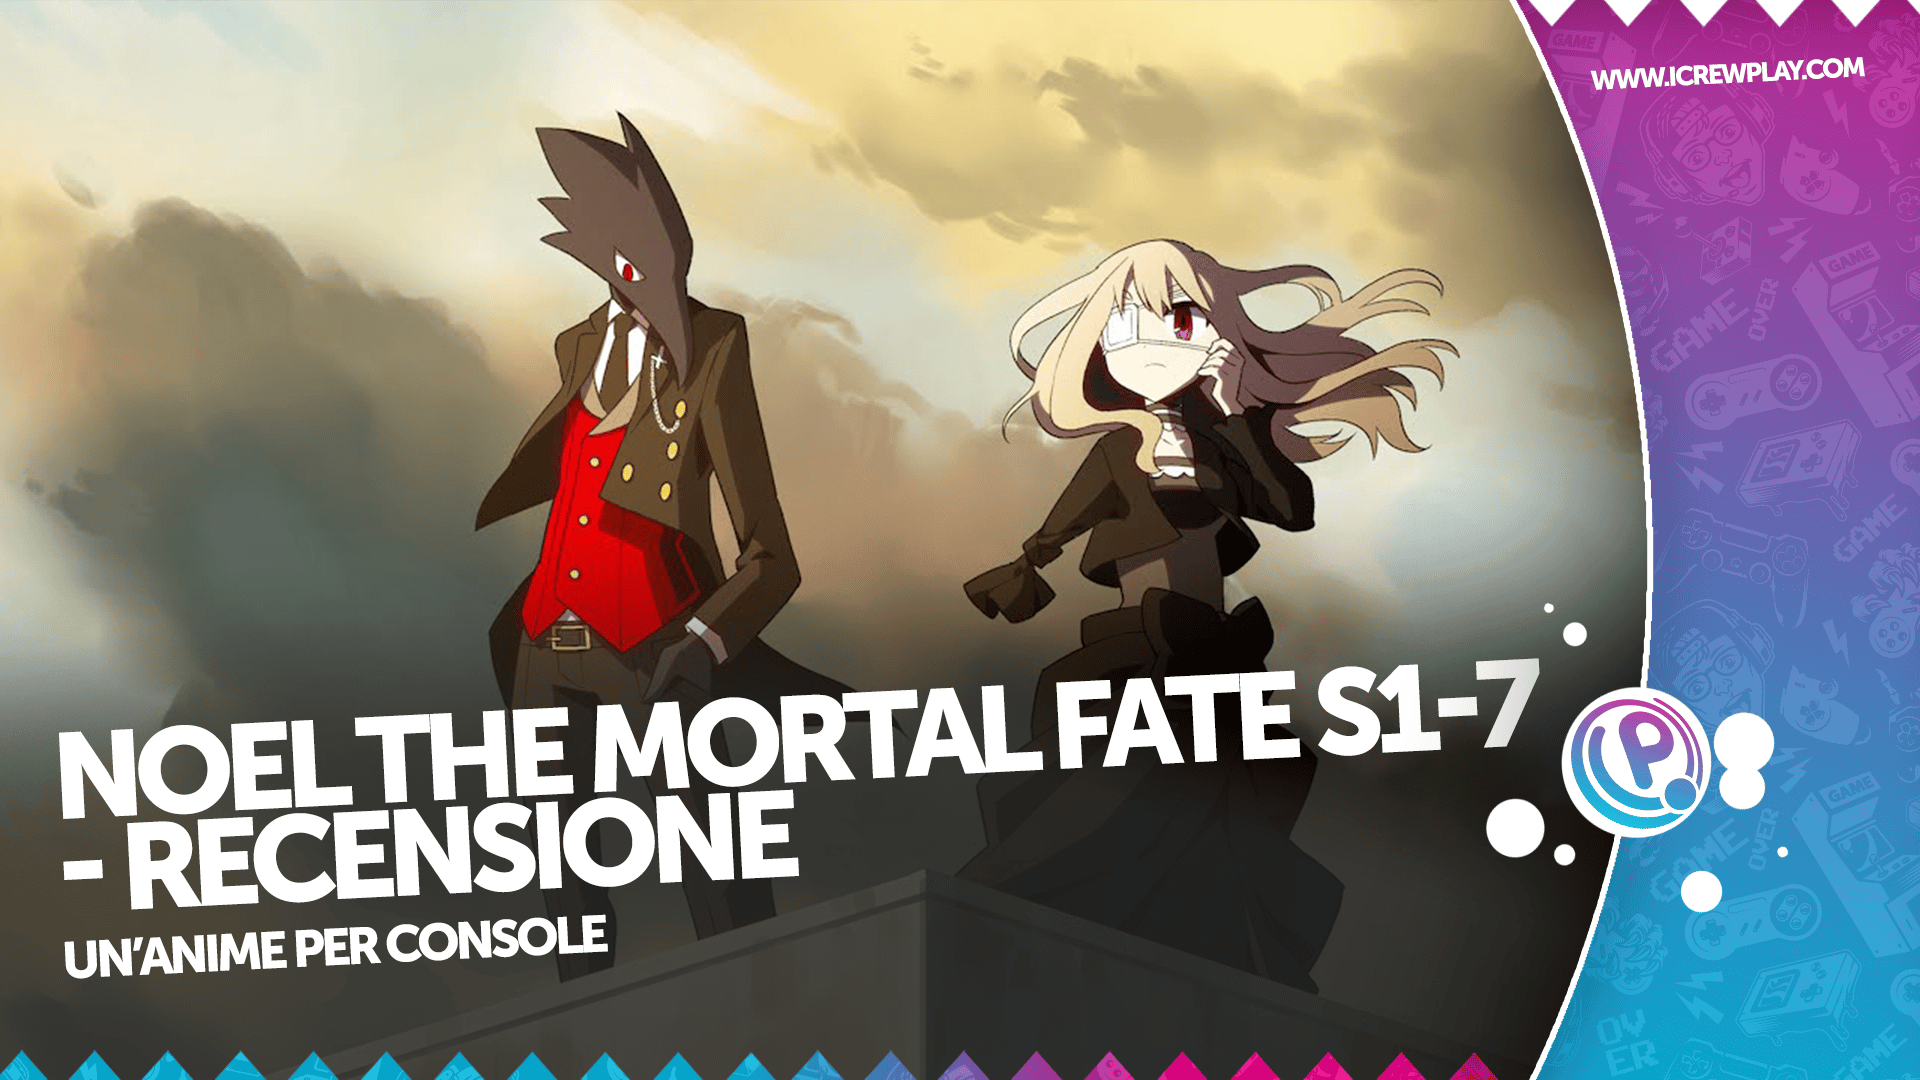 Noel The Mortal Fate S1-7 - Recensione per Nintendo Switch 10